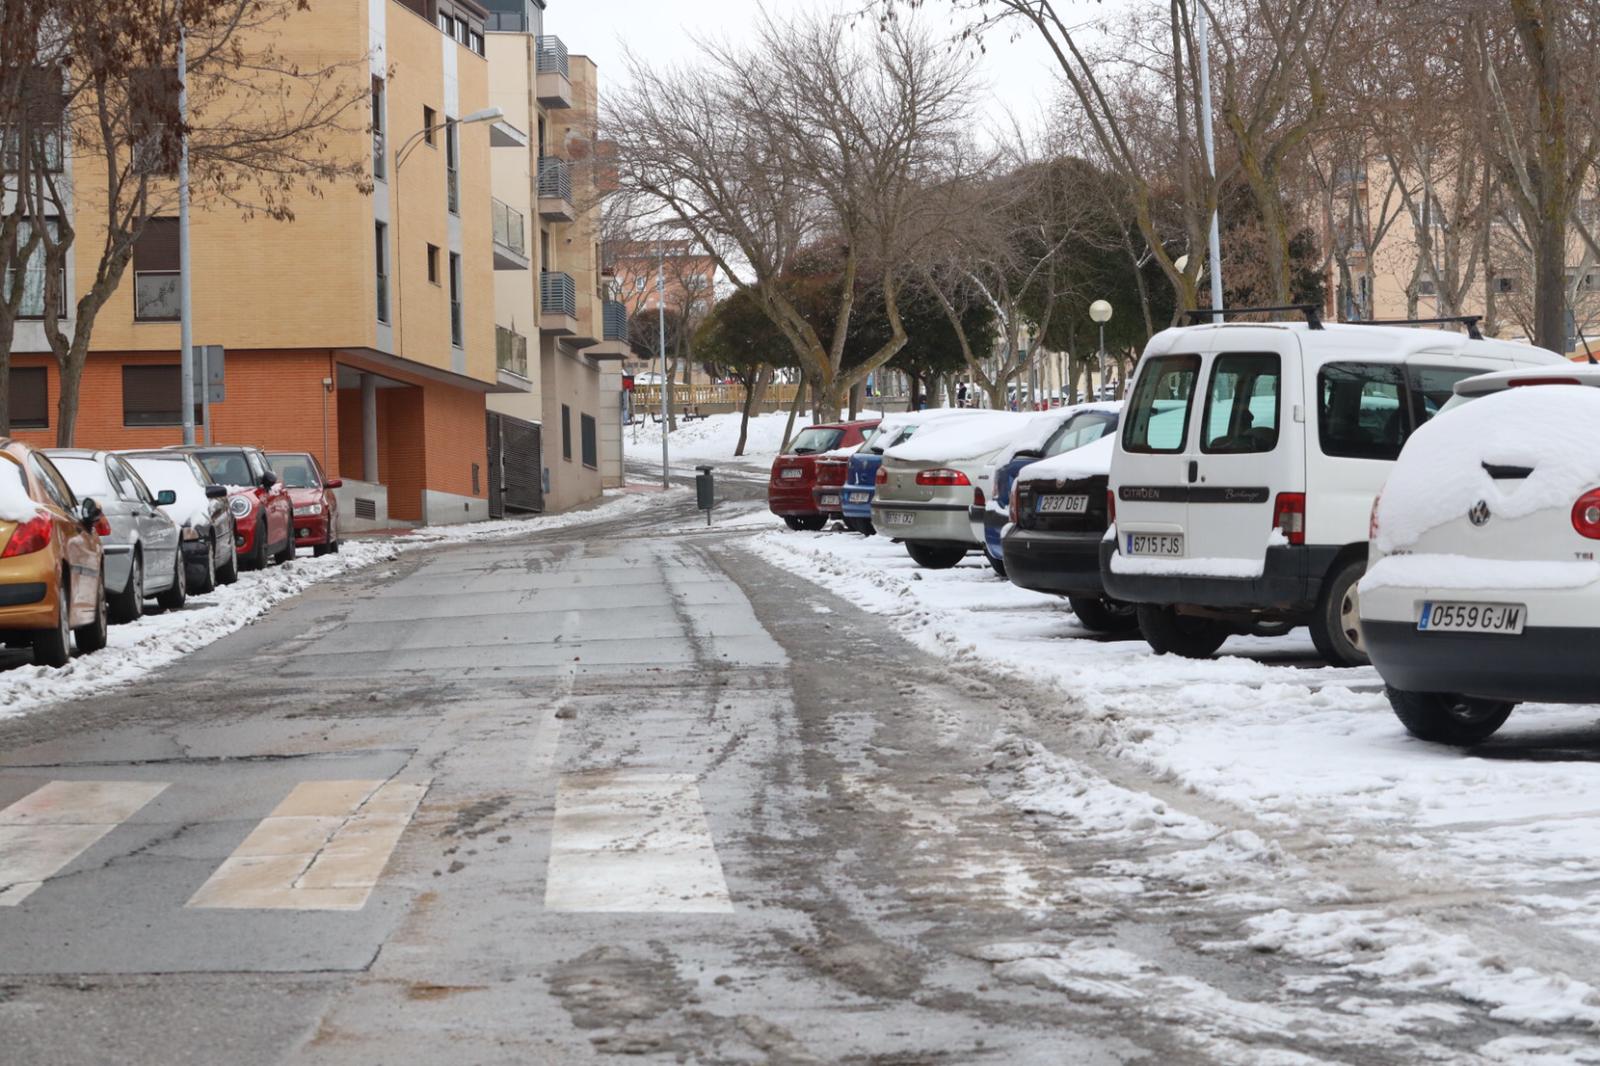 Hielo y nive en Salamanca  calles de Pizarrales (5)